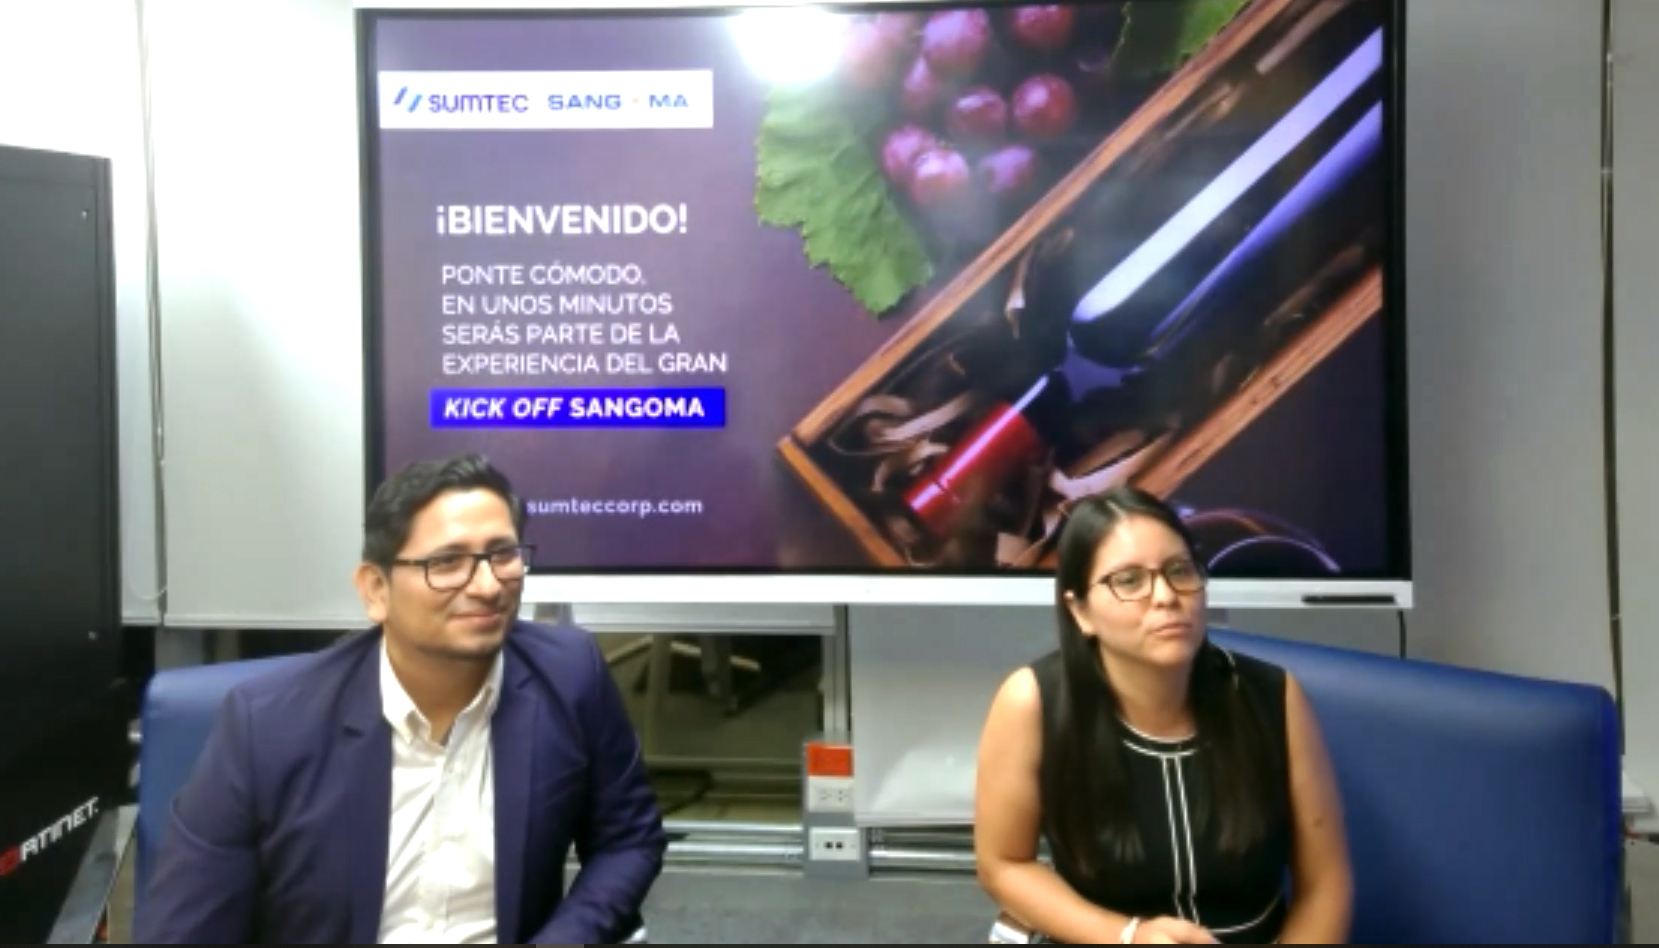 Sumtec y Sangoma presentaron a sus partners nuevo portafolio para el mercado peruano